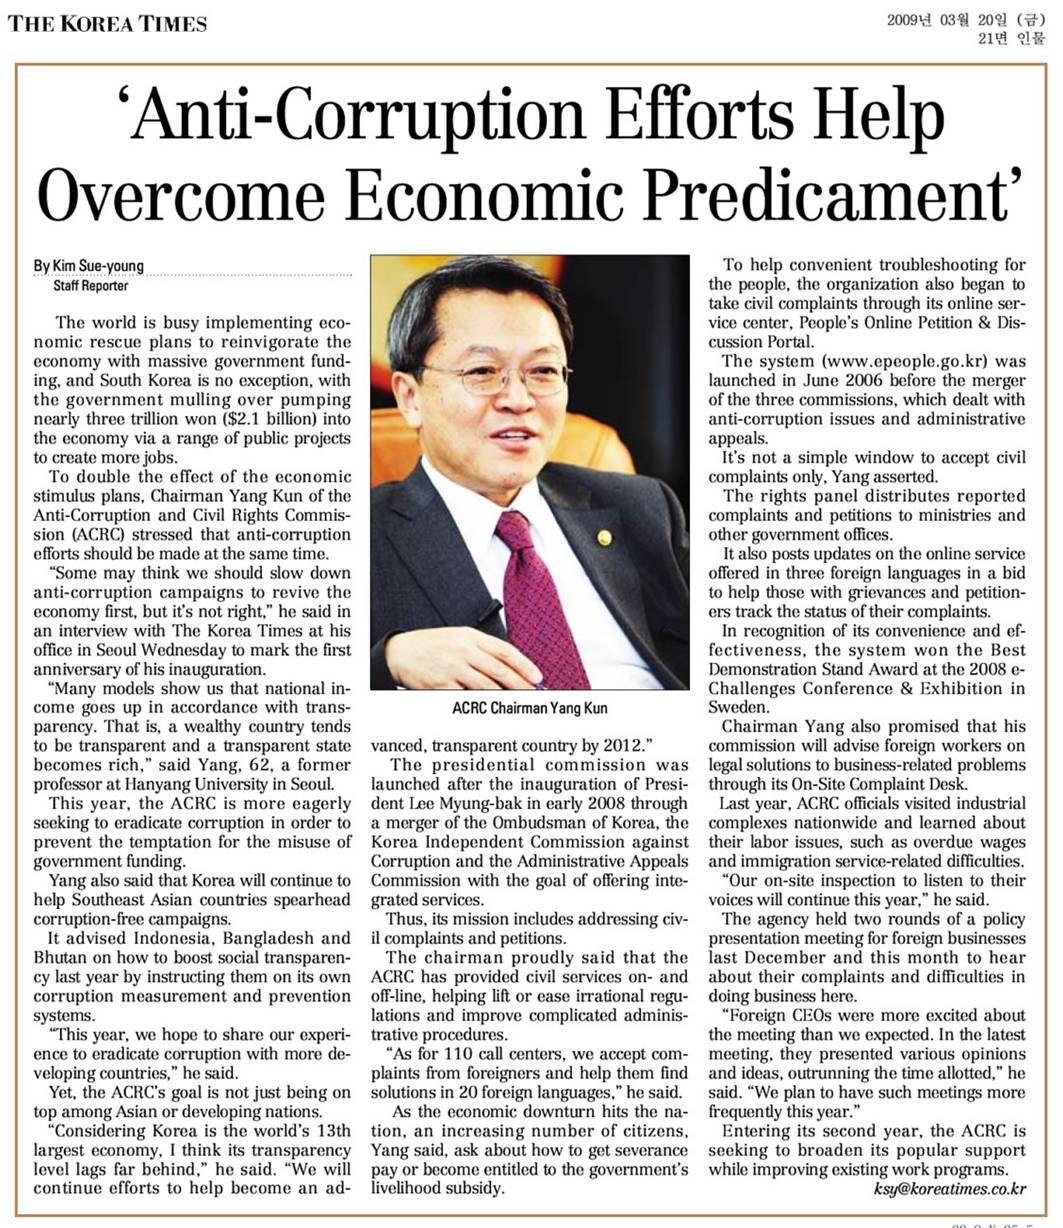 Anti-Corruption Efforts Help Overcome Economic Predicament list image